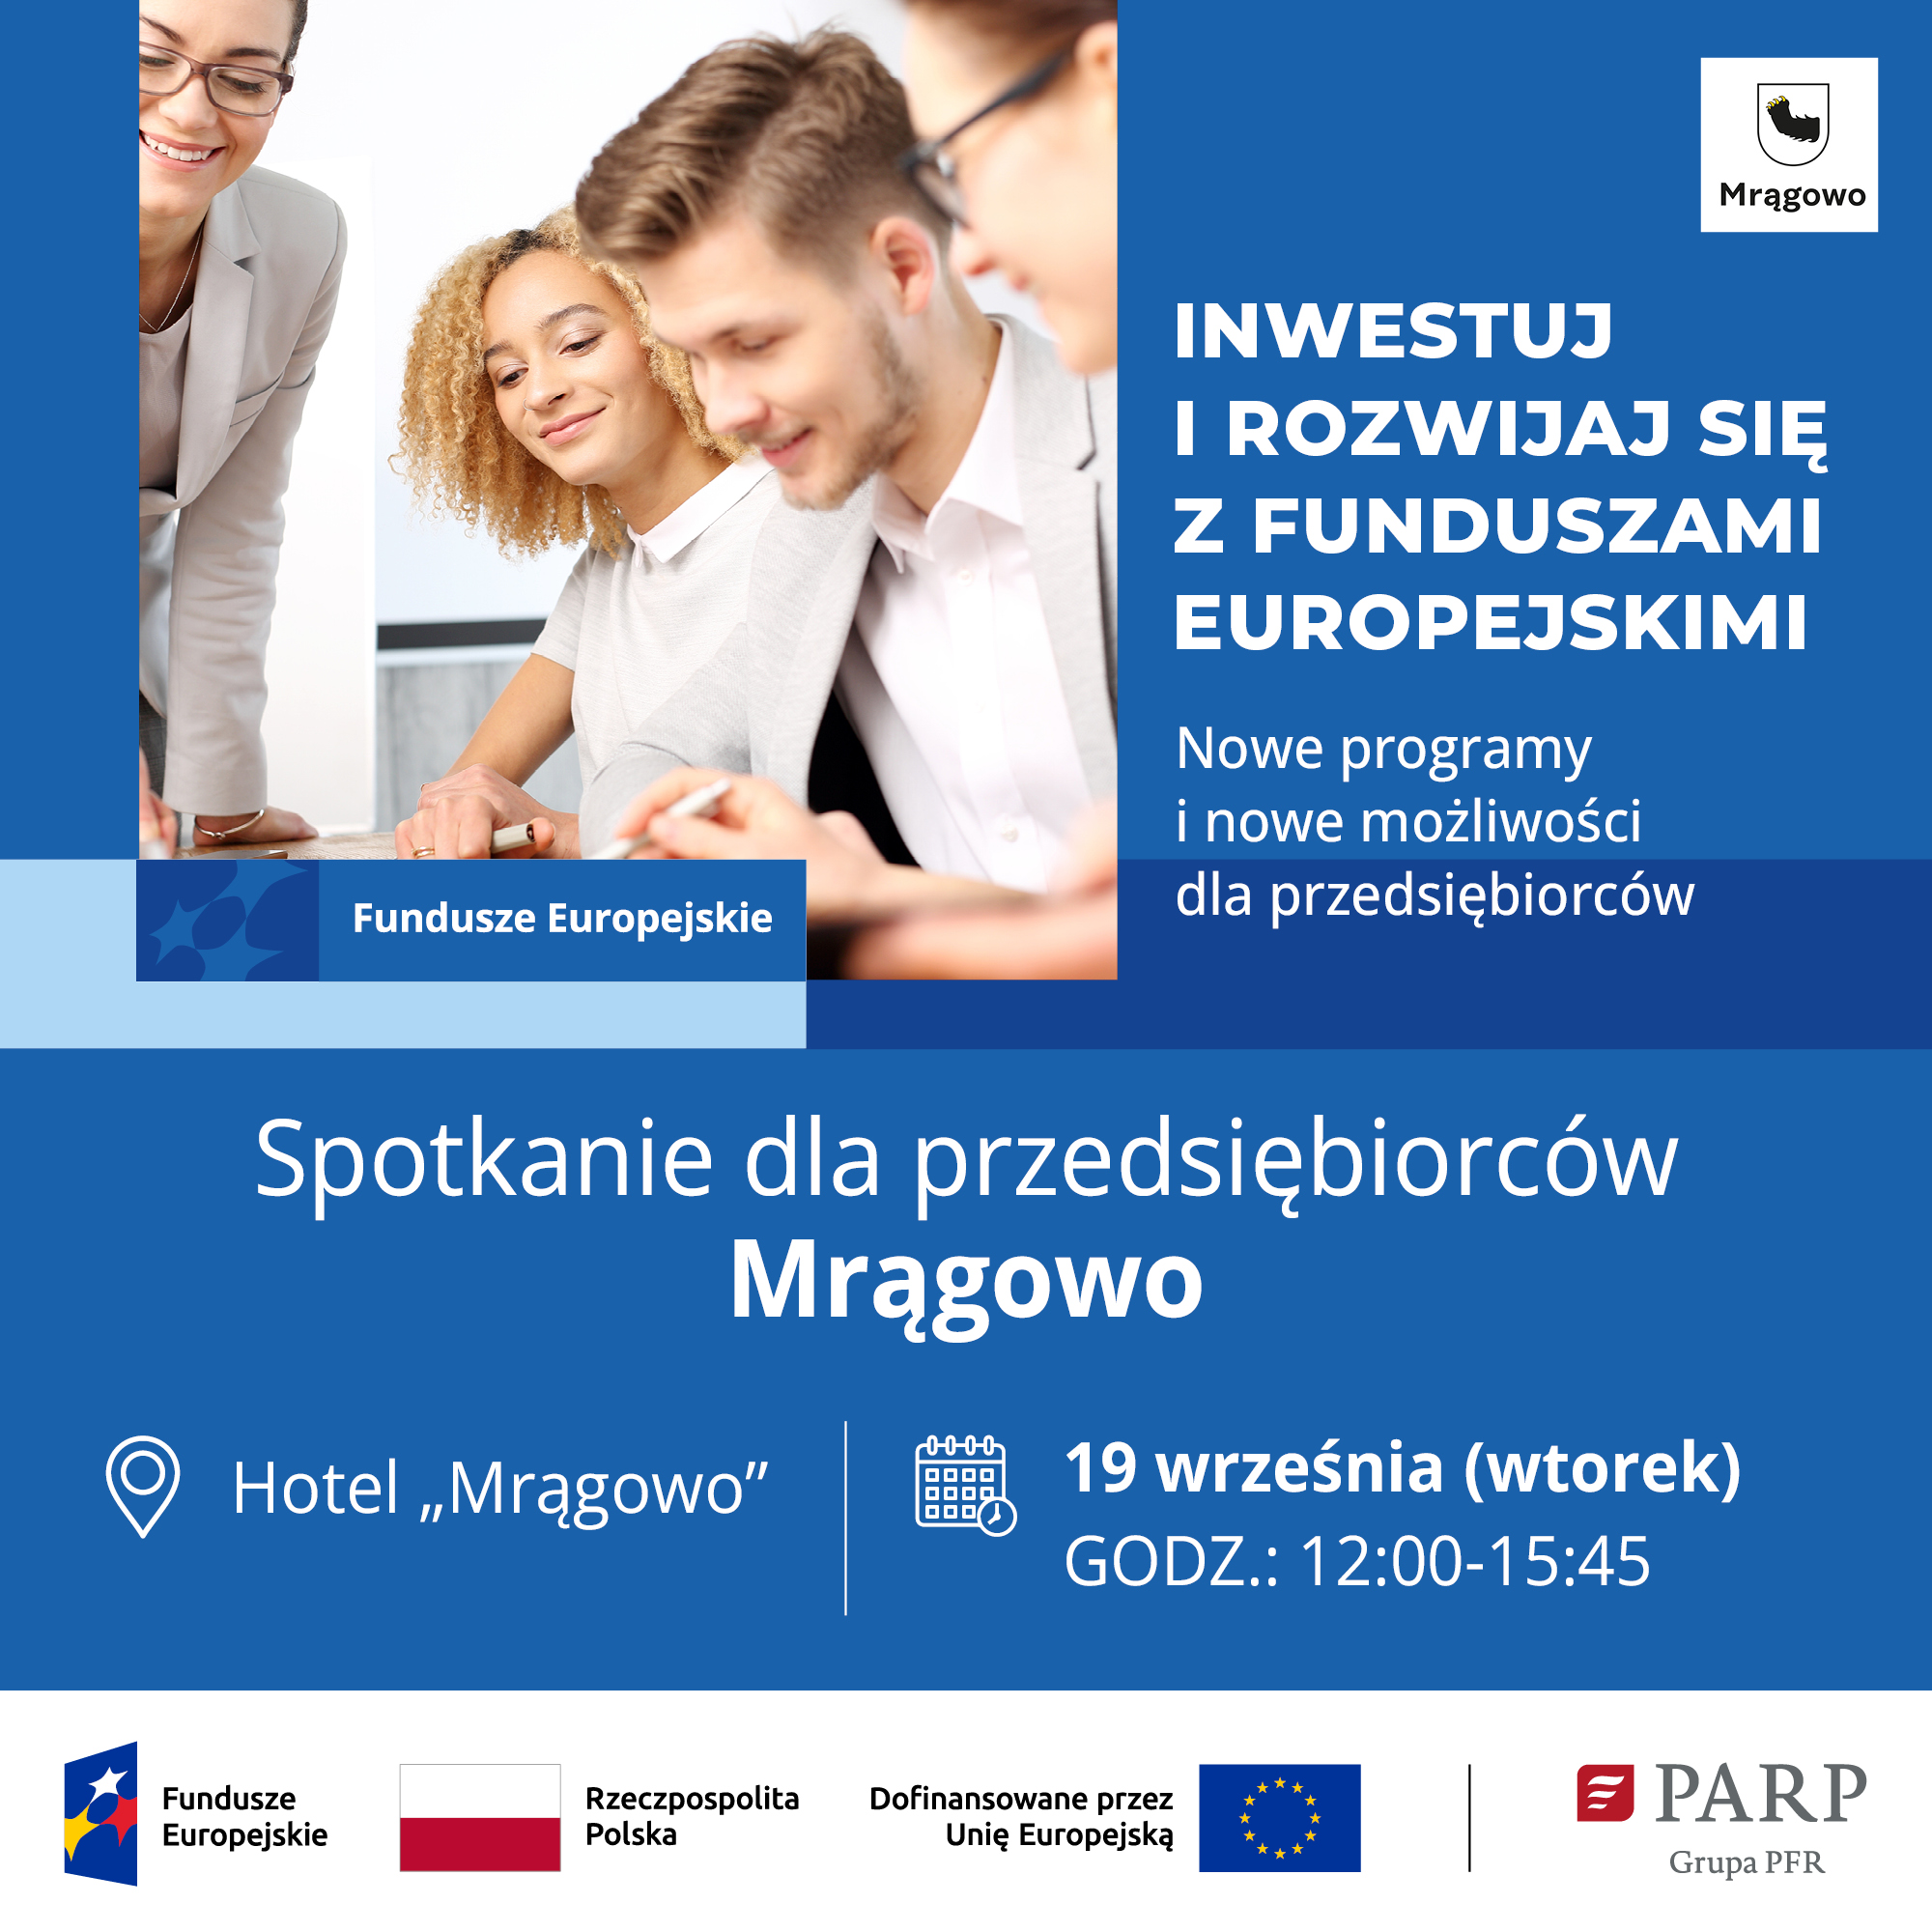 Obraz artykułu - Inwestuj i rozwijaj się z funduszami europejskimi. Weź udział w spotkaniu PARP w Mrągowie!